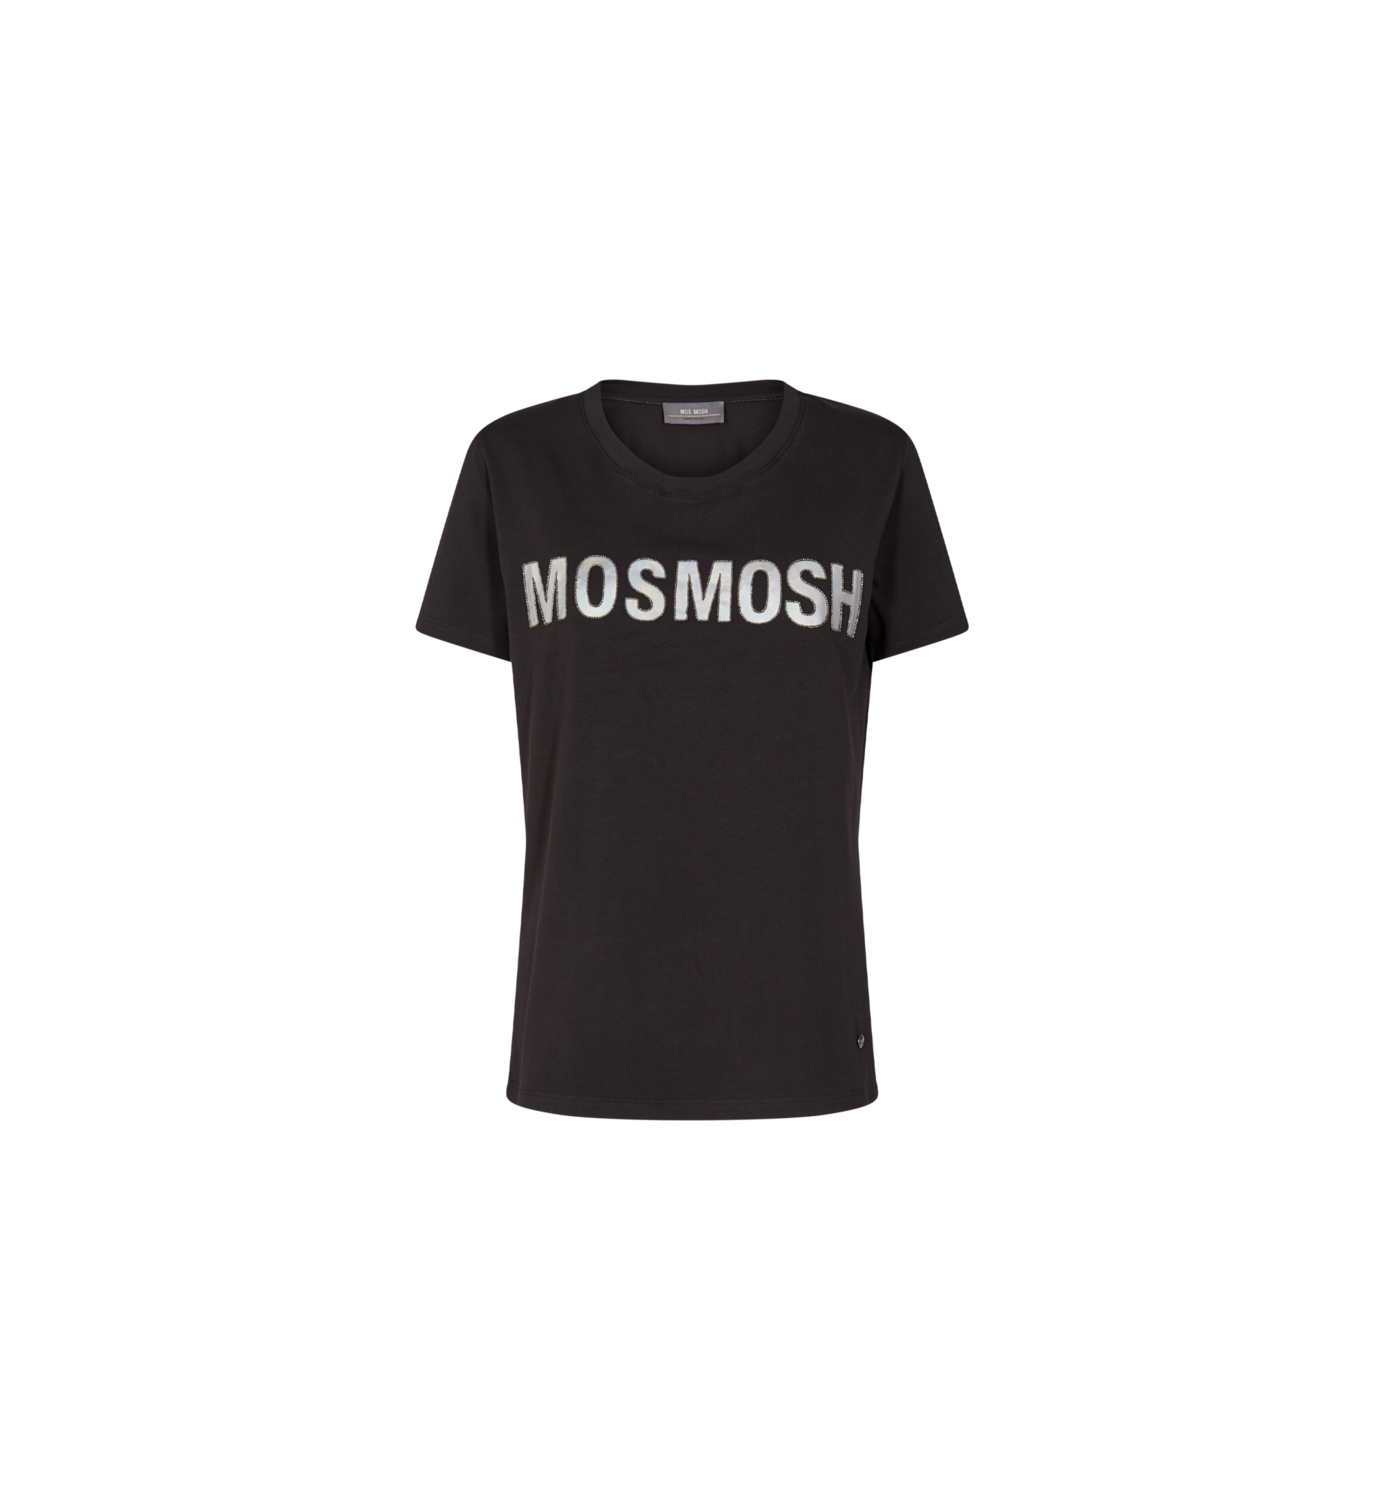 Mos Mosh tshirt